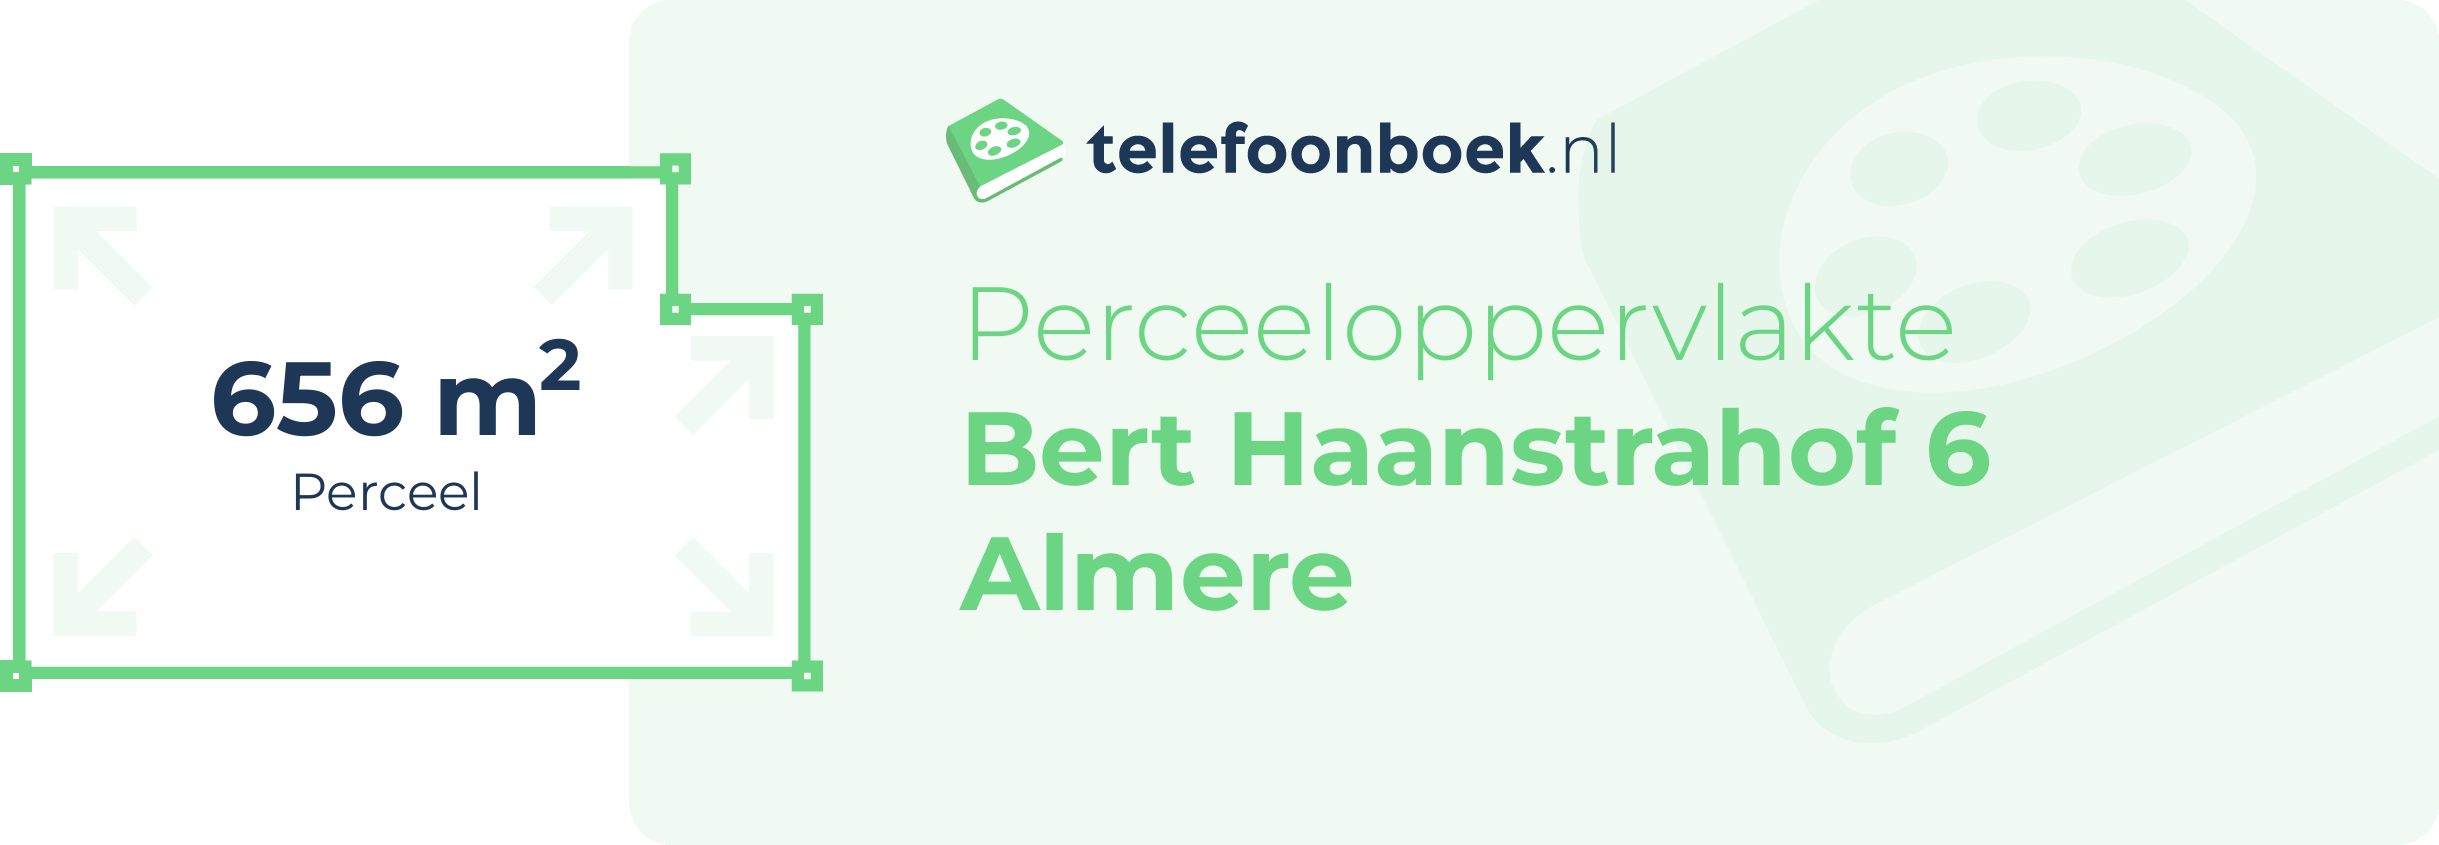 Perceeloppervlakte Bert Haanstrahof 6 Almere